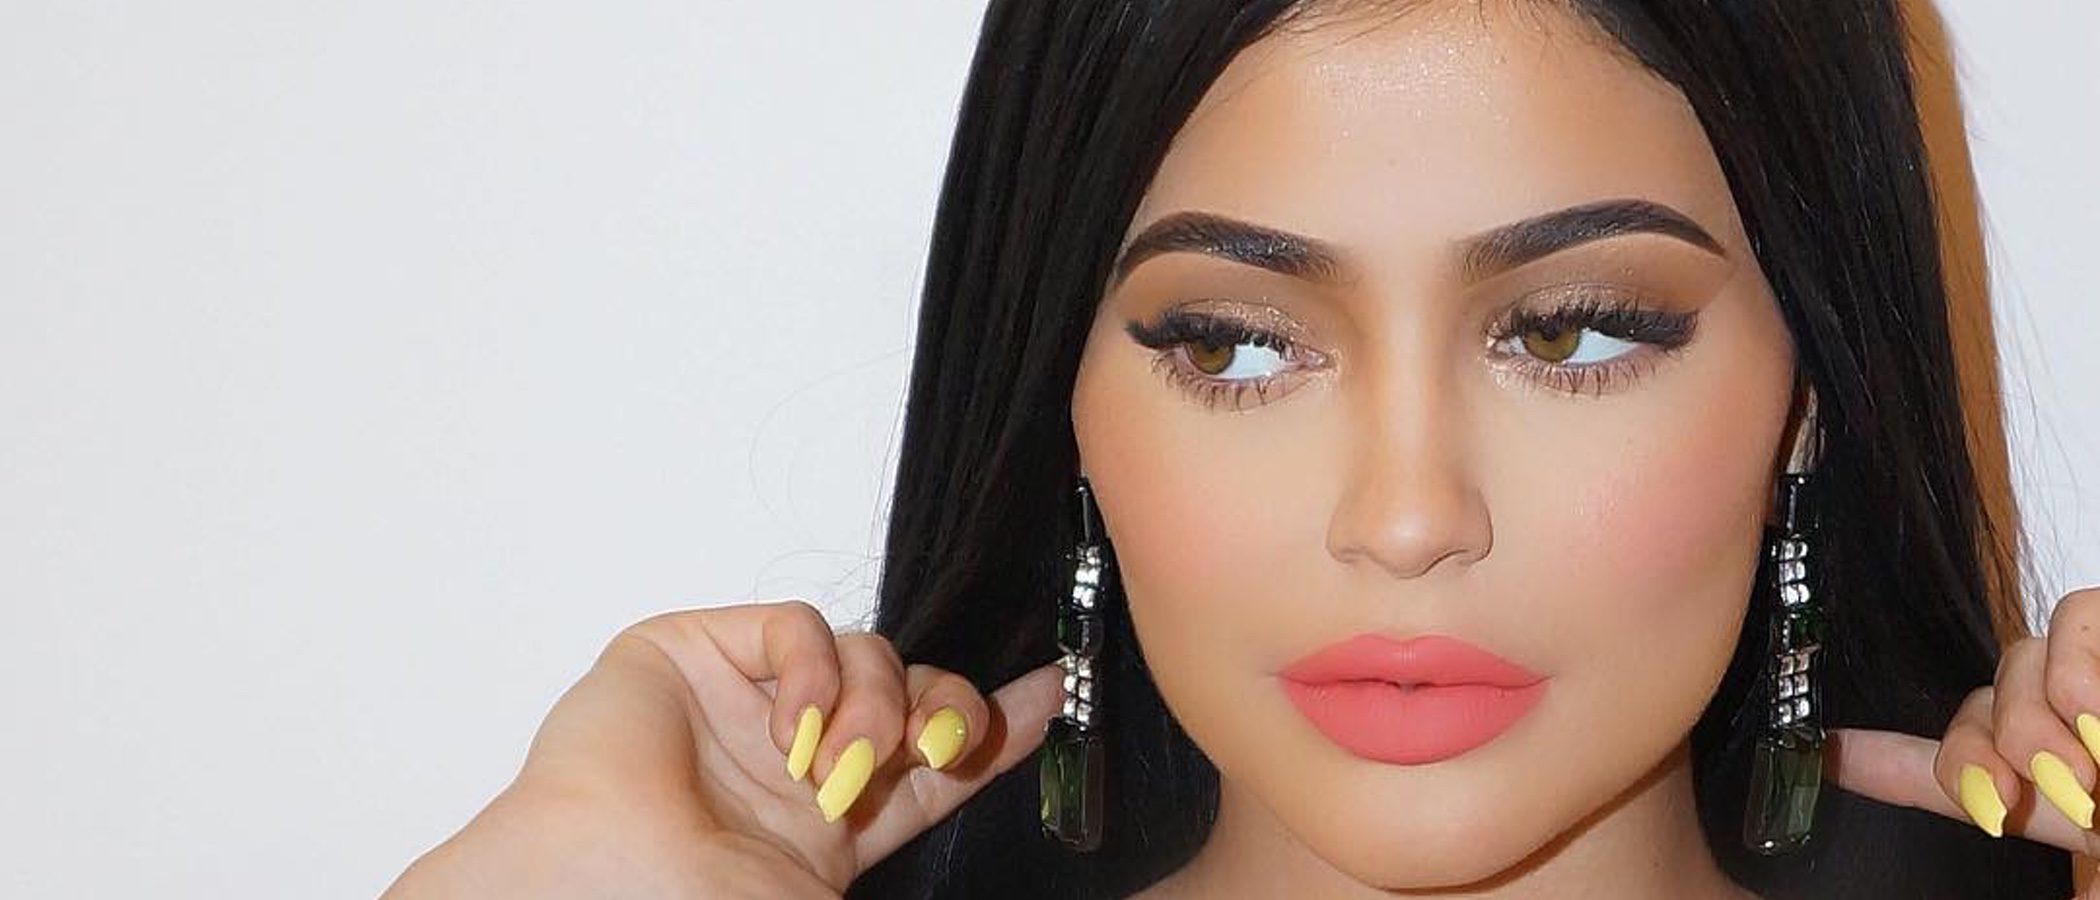 Kylie Jenner triunfa con 'Vacation Edition', su nueva línea de maquillaje